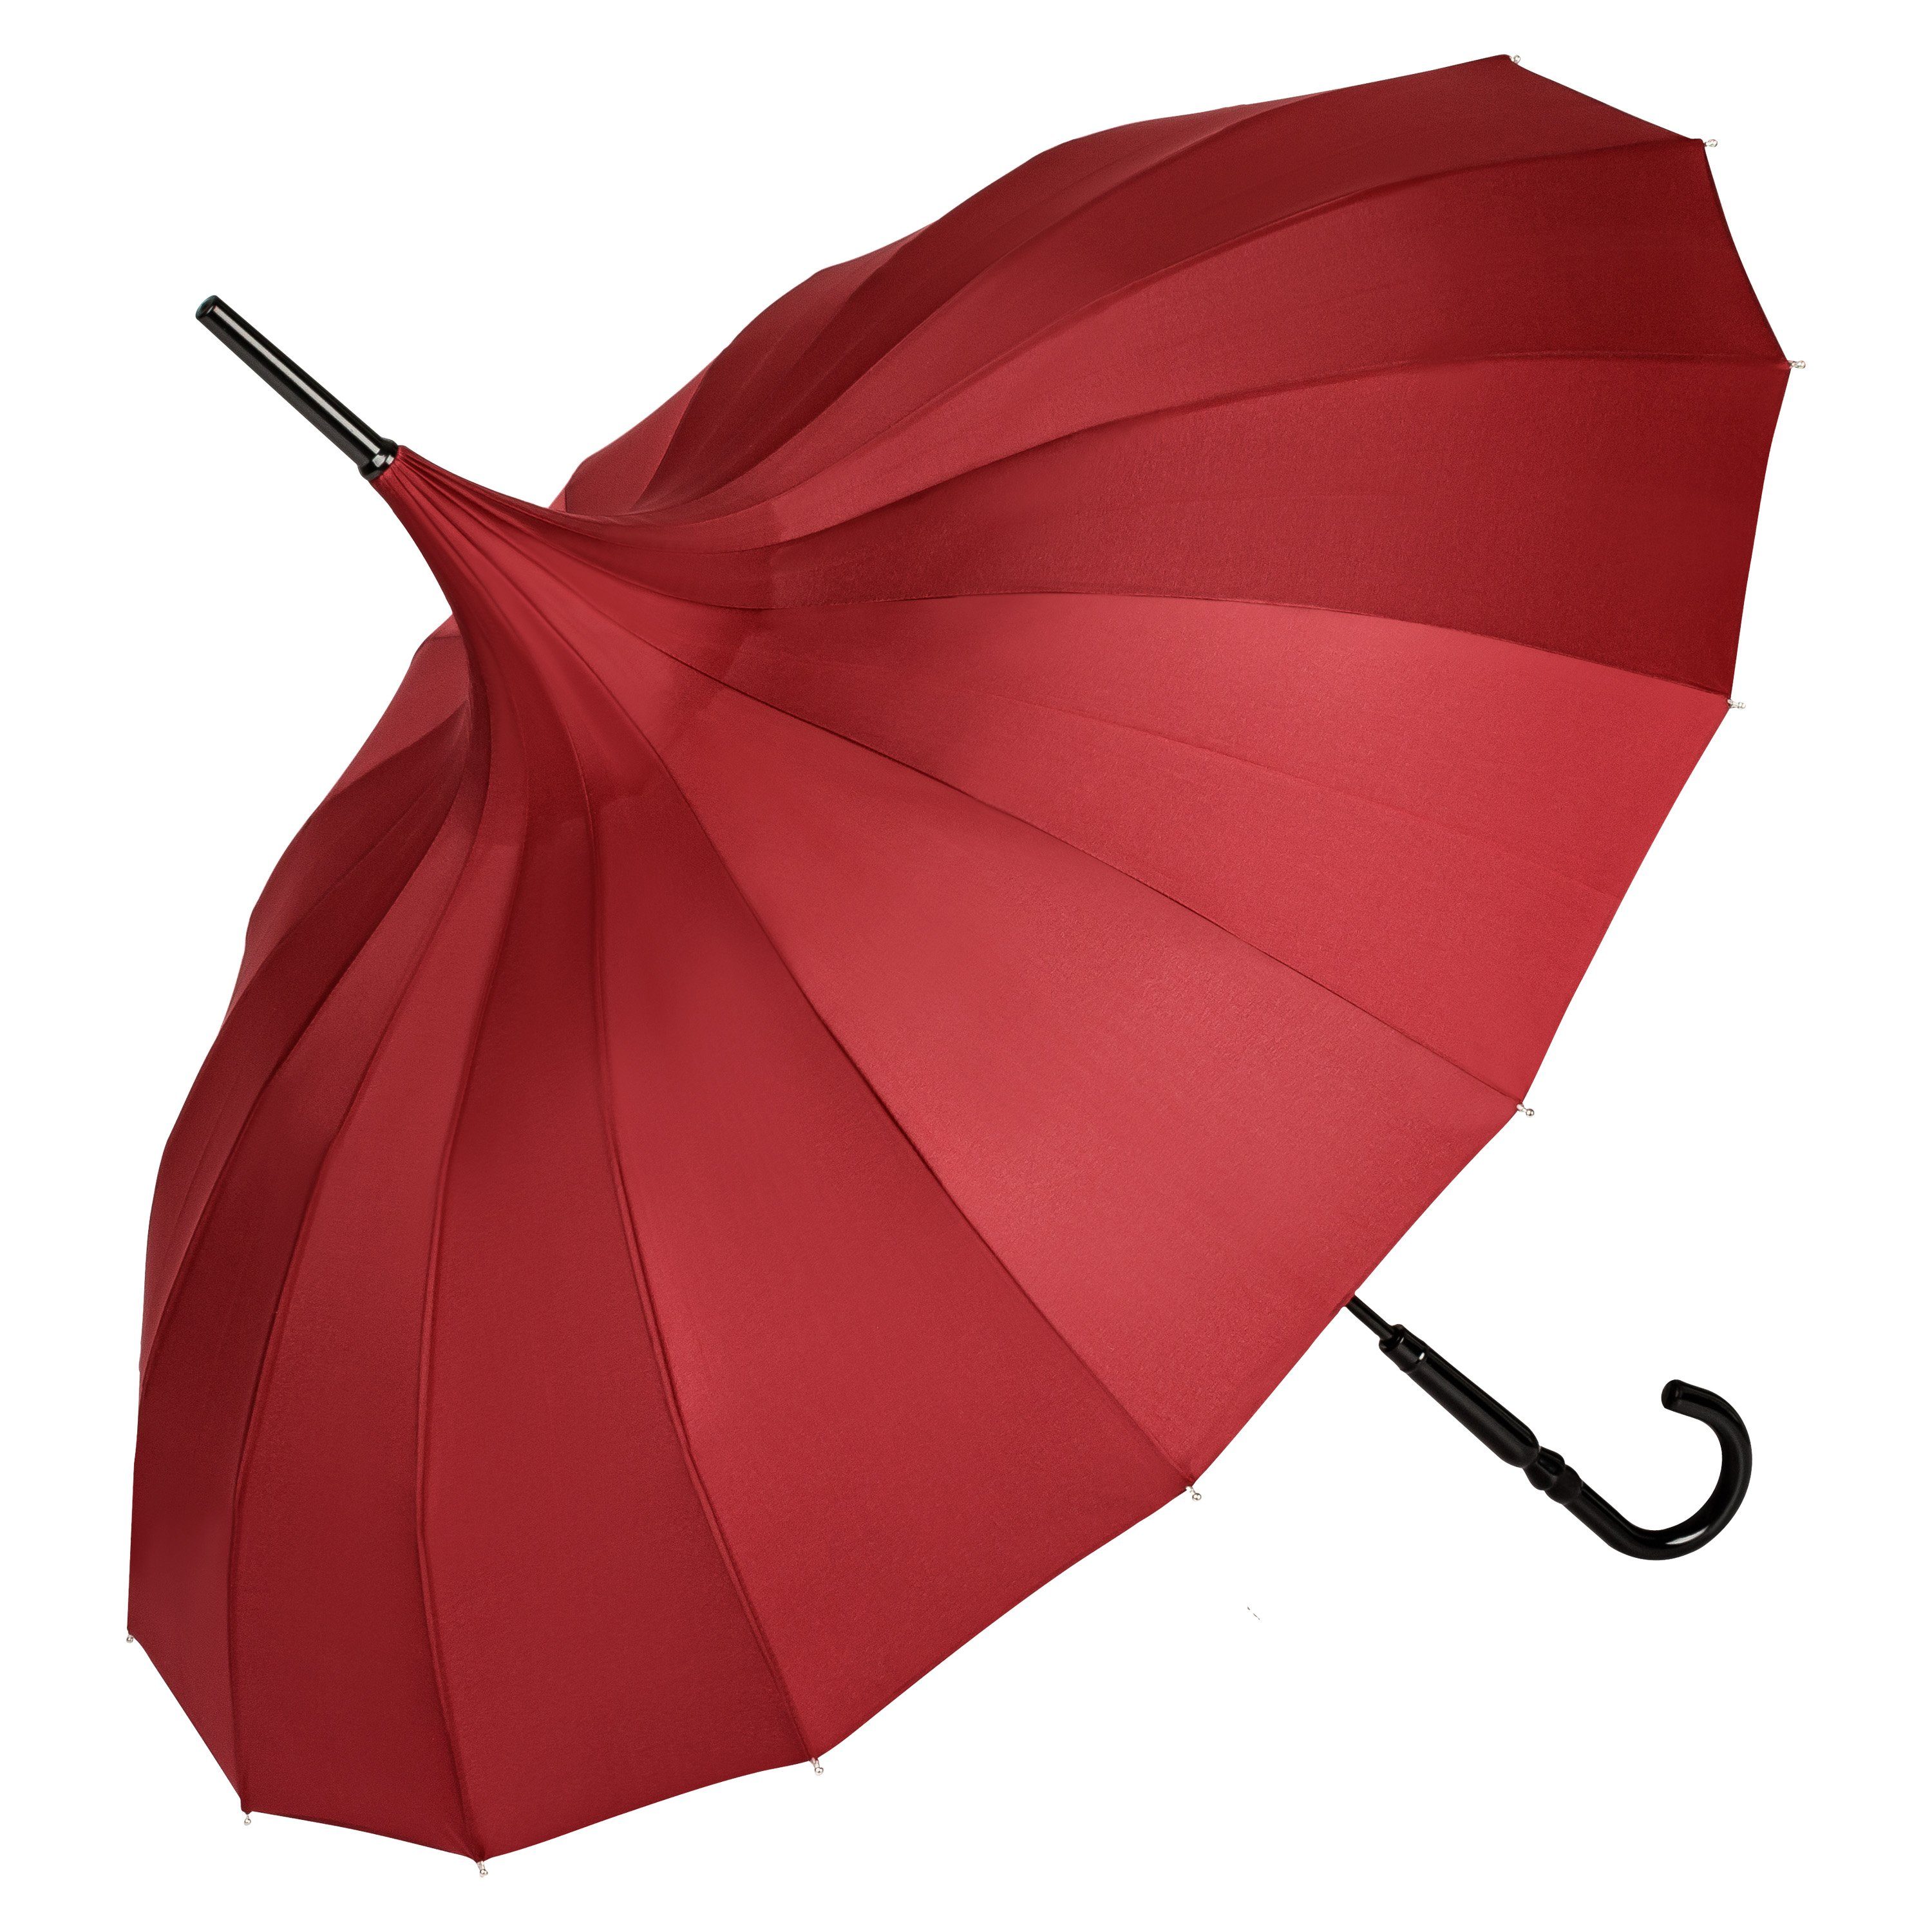 von Lilienfeld Stockregenschirm Regenschirm Sonnenschirm Pagode Charlotte, Pagodenform mit 16 Segmenten bordaux